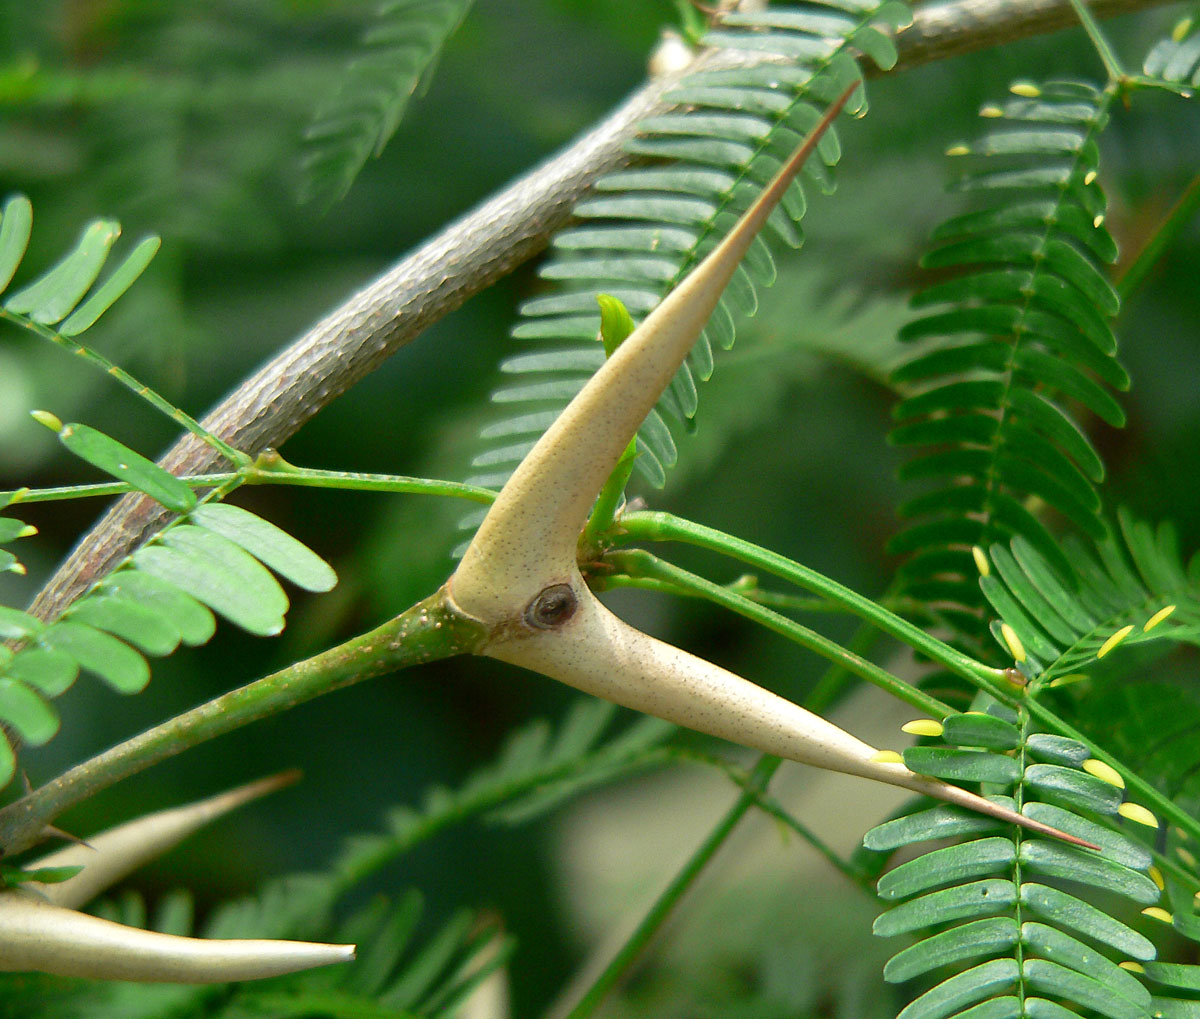 A closer look on bullhorn acacia thorns.